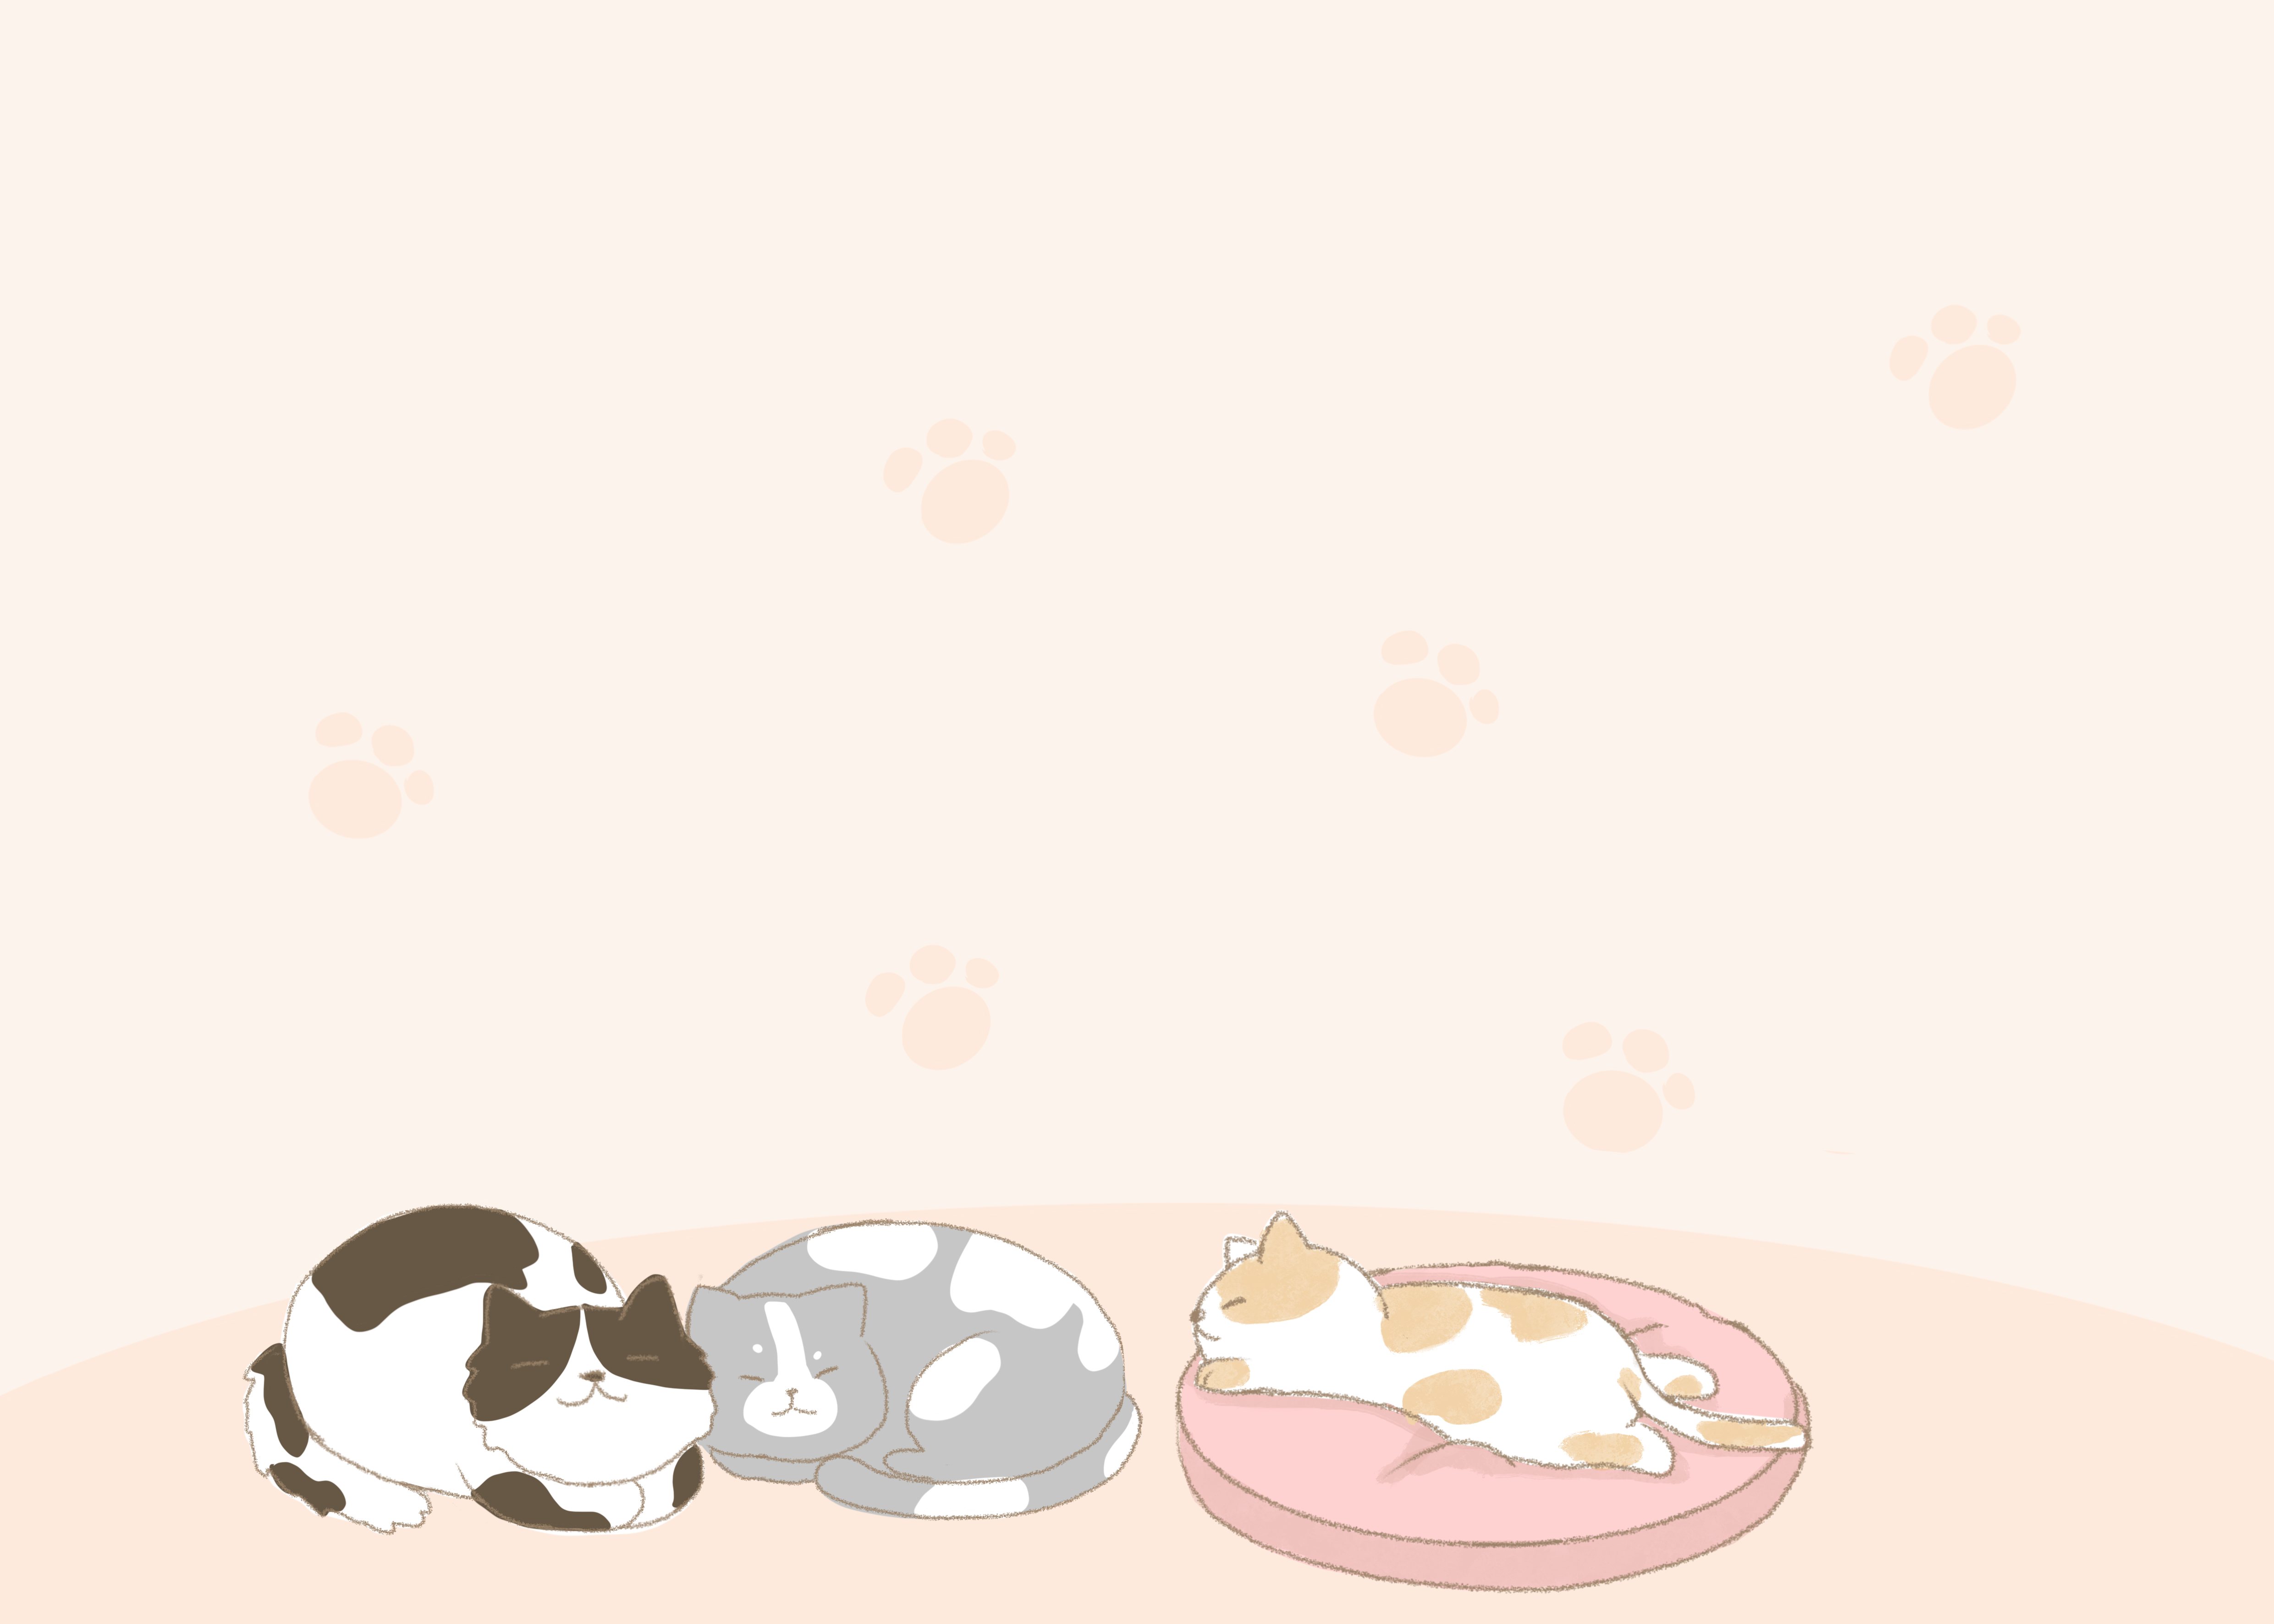 잠자는 고양이 일러스트 귀여운 새끼 노란, 고양이, 분홍색 고양이 둥지, 귀여운 새끼 고양이 PNG 일러스트 및 PSD 이미지 ...